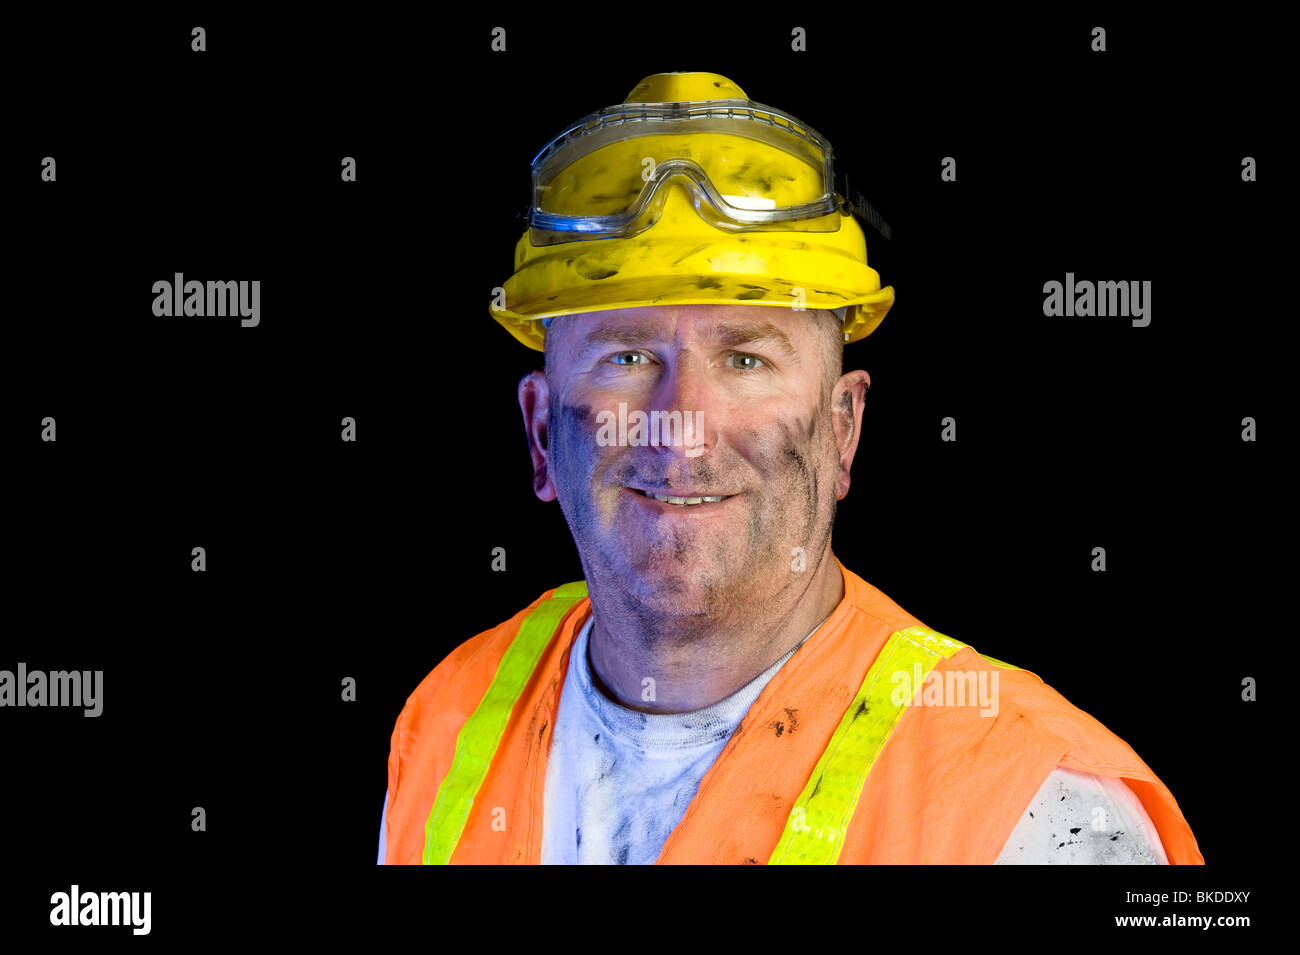 Cerca de trabajador de la vistiendo ropa de trabajo protectora para enfatizar la seguridad Fotografía de stock Alamy